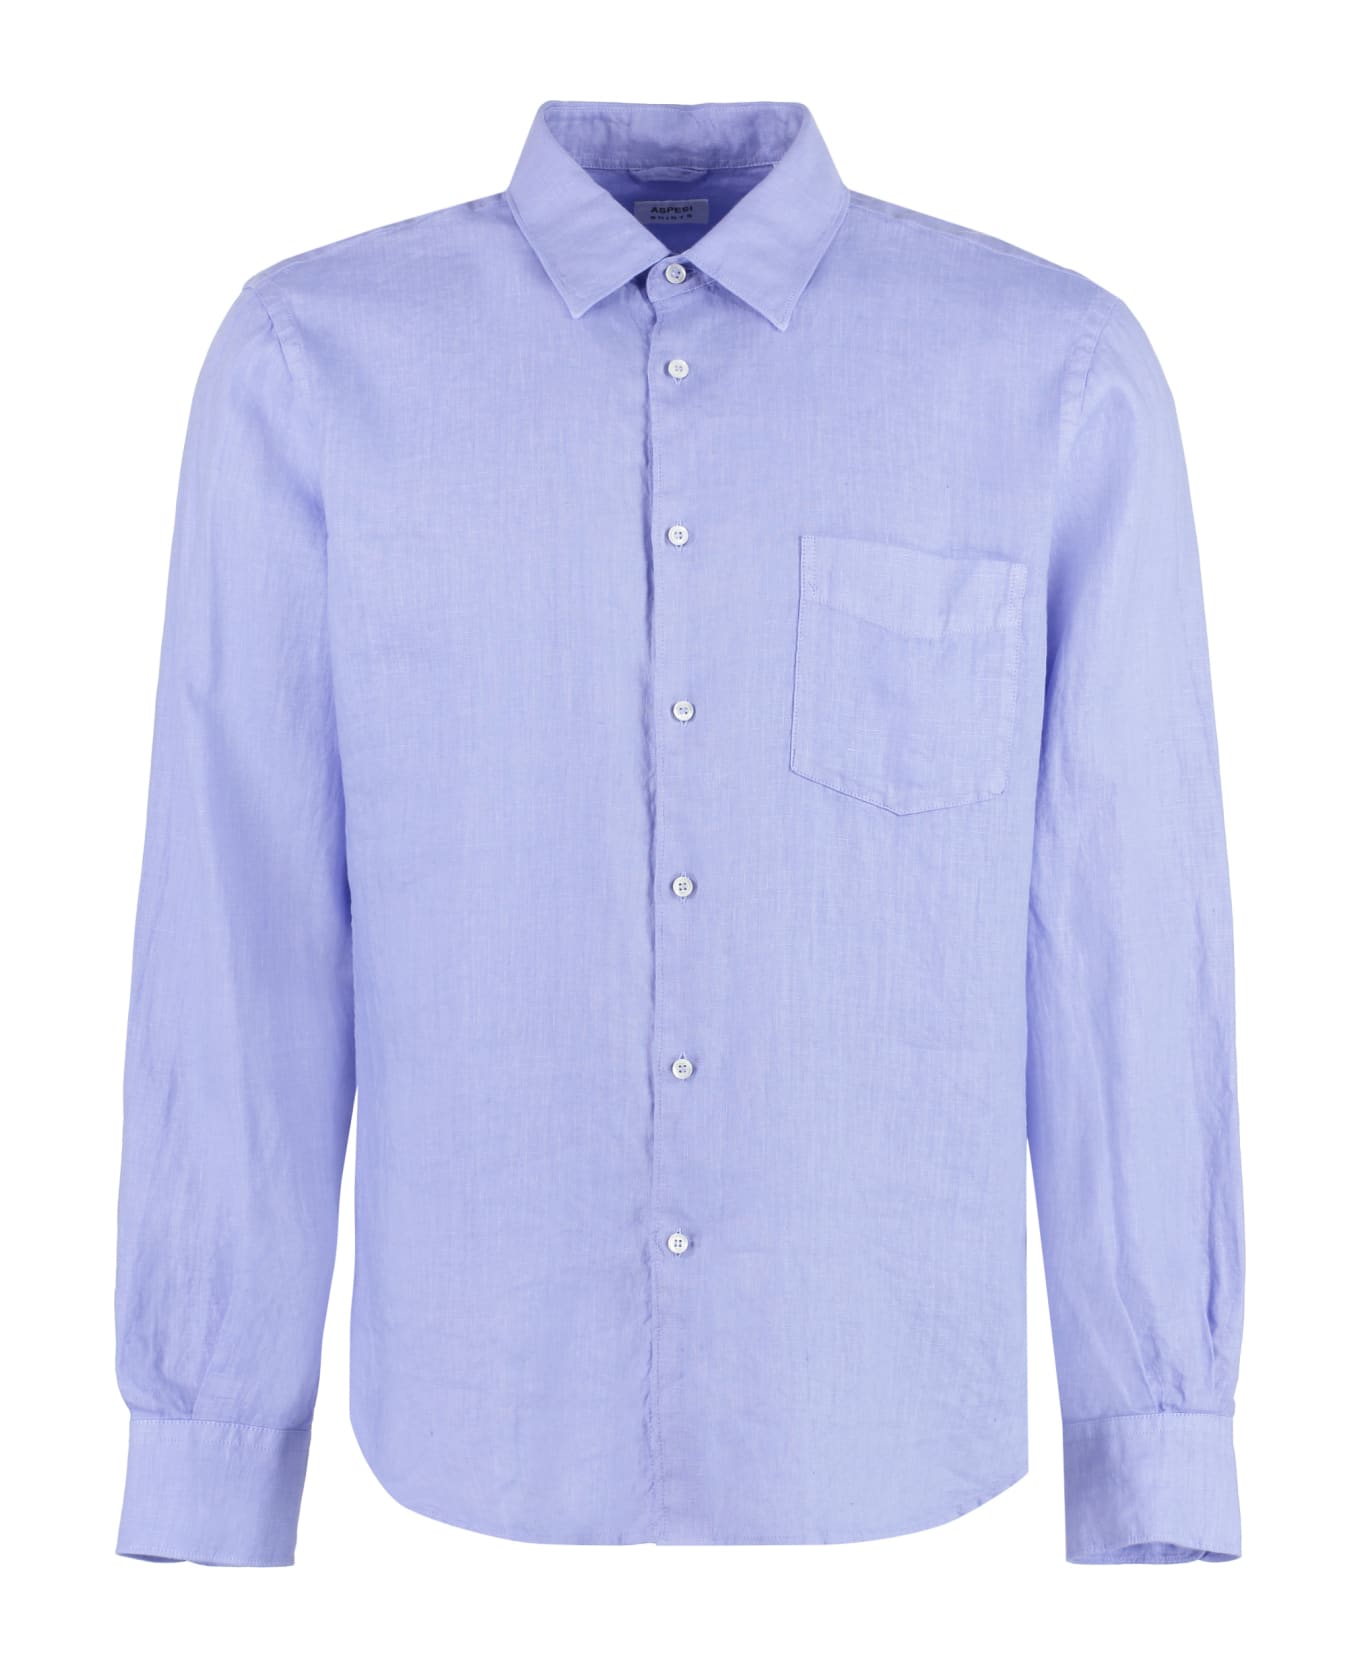 Aspesi Linen Shirt - Light Blue シャツ